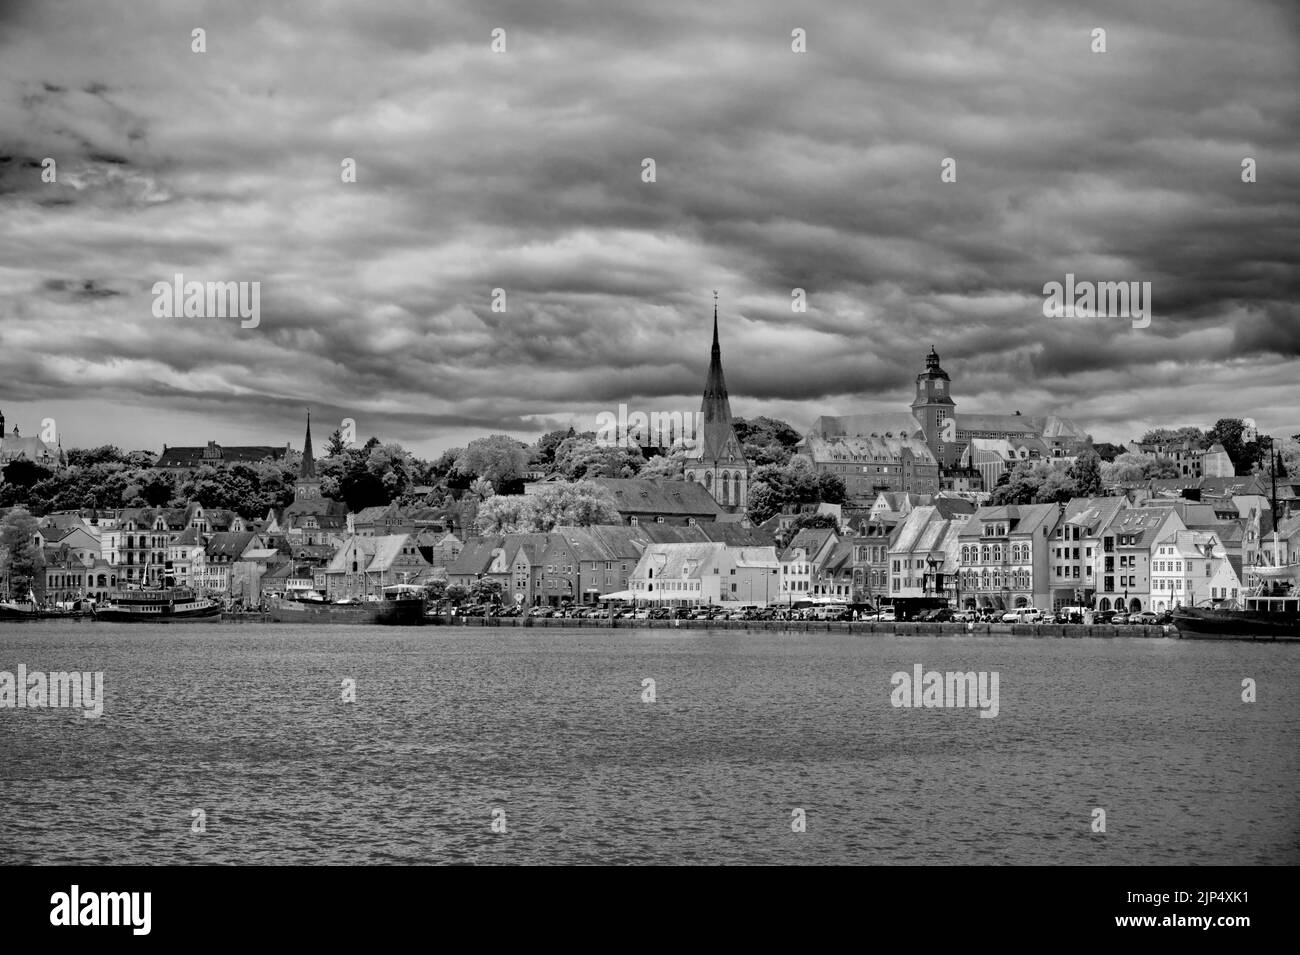 Flensburg Deutschland Europa-Panoramablick vom Meer in schwarz-weiß Stockfoto